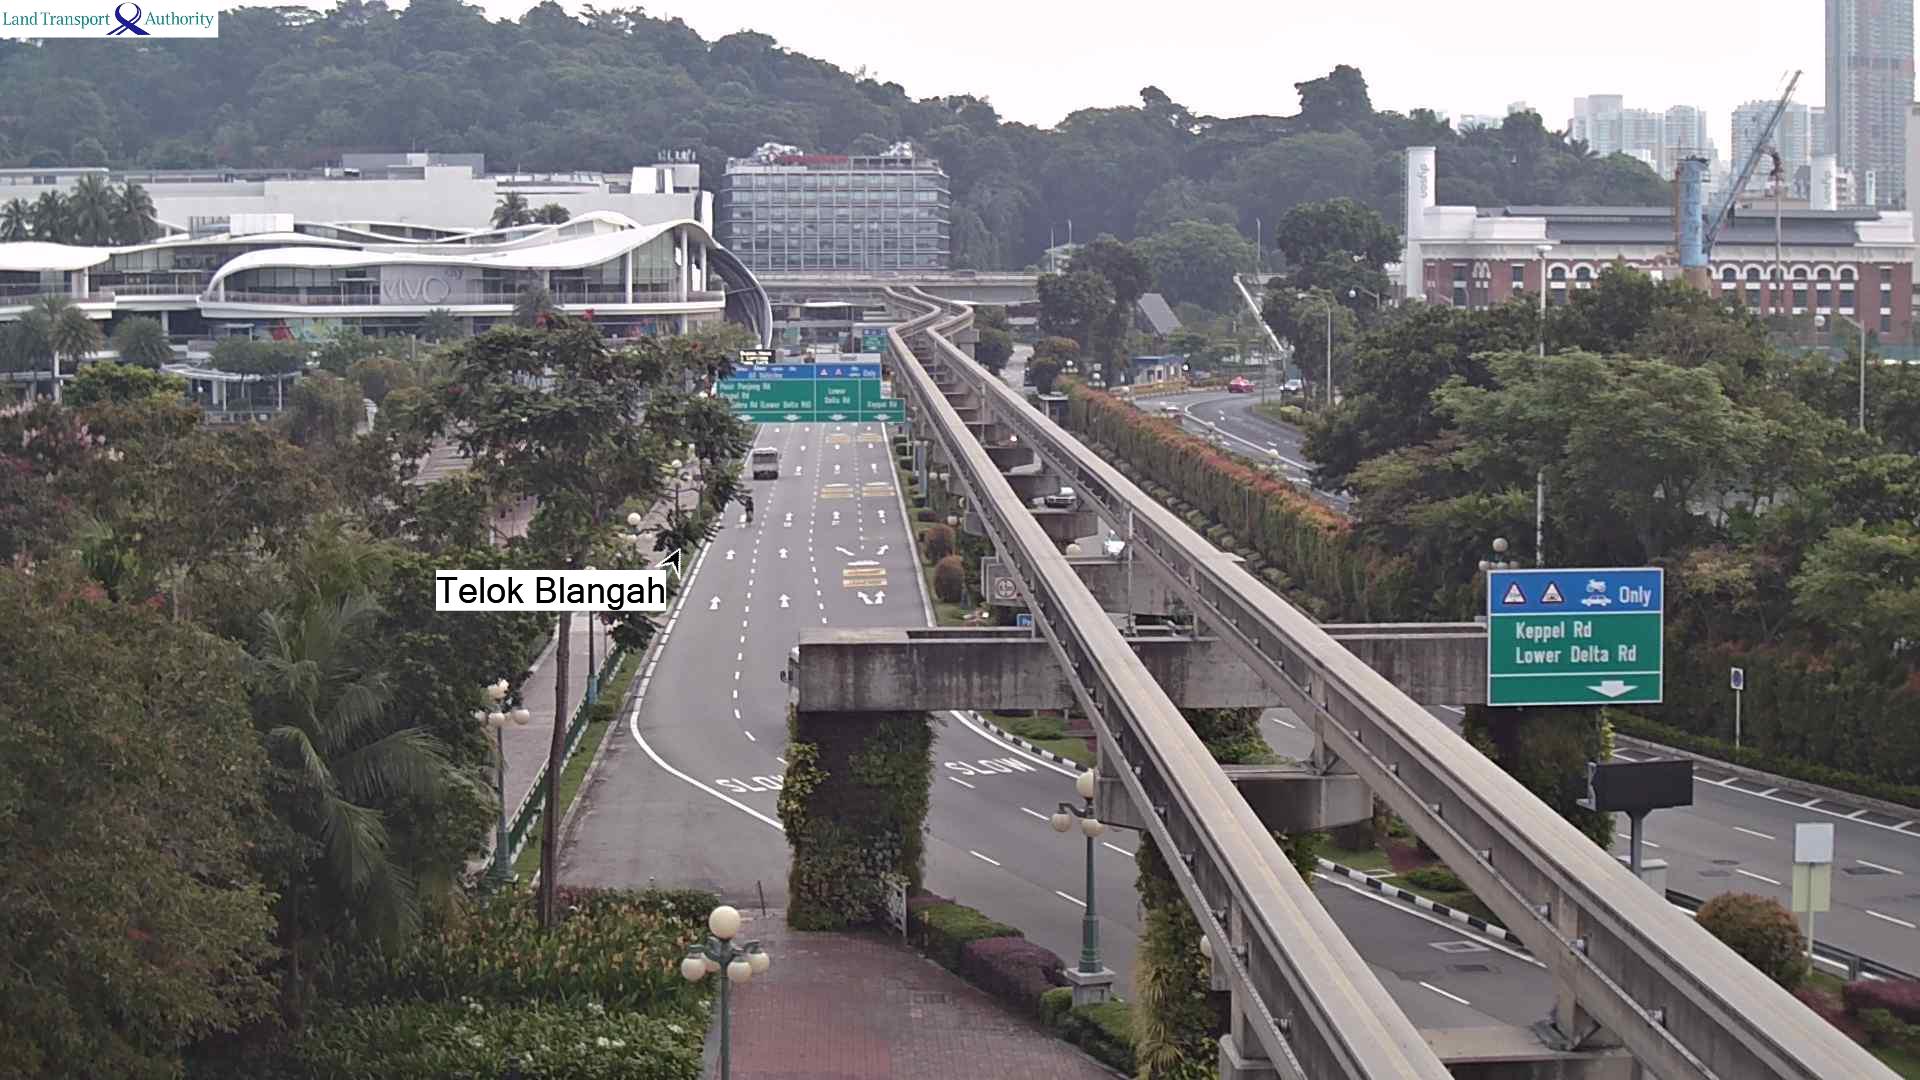 View from Sentosa Gateway (Towards Telok Blangah) - Sentosa Gateway - Singapore